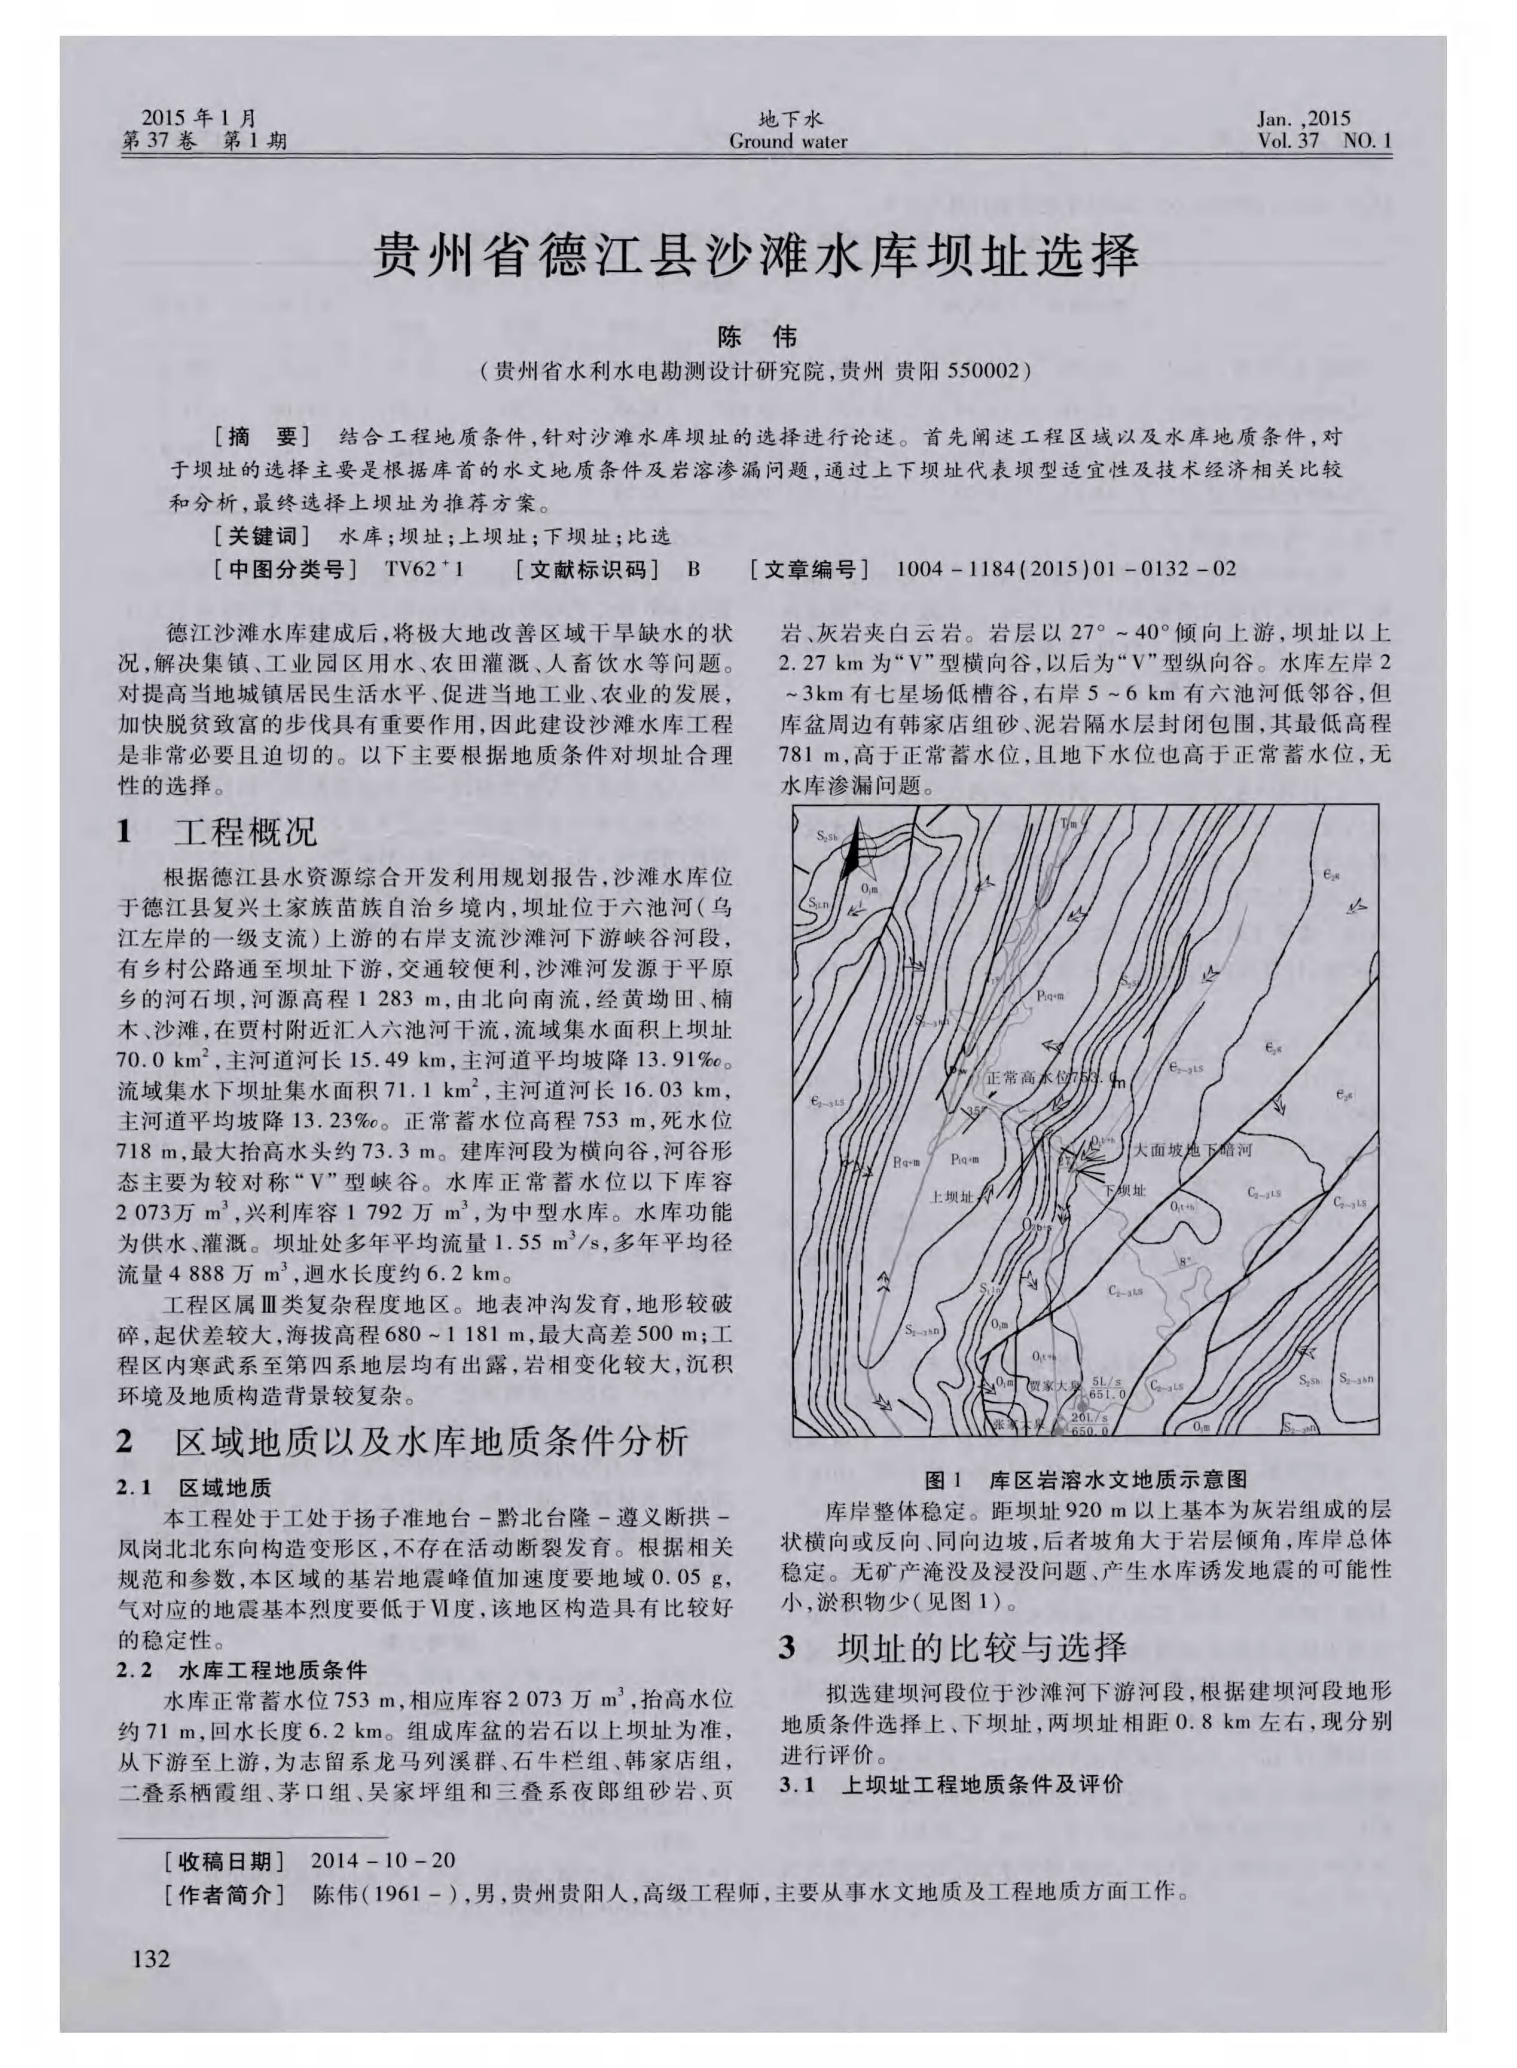 贵州沙坝水库地图(道真县地图)